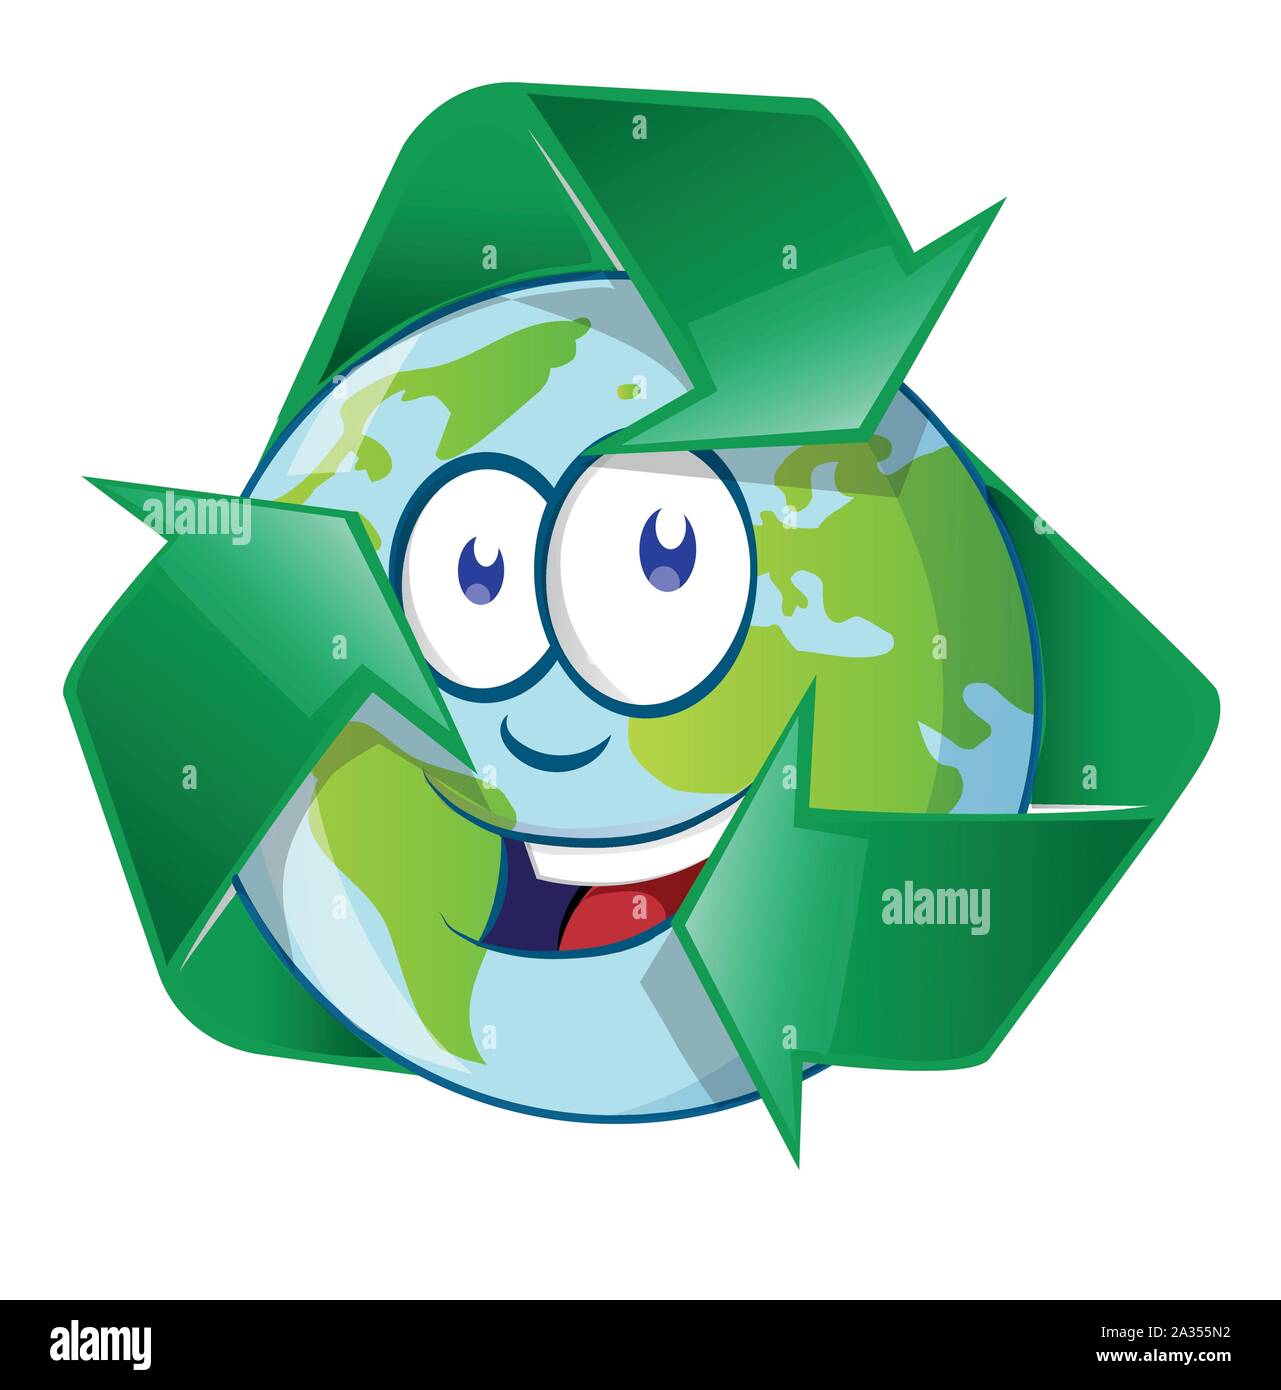 La planète Terre Personnage sur symbole recyclin Illustration de Vecteur